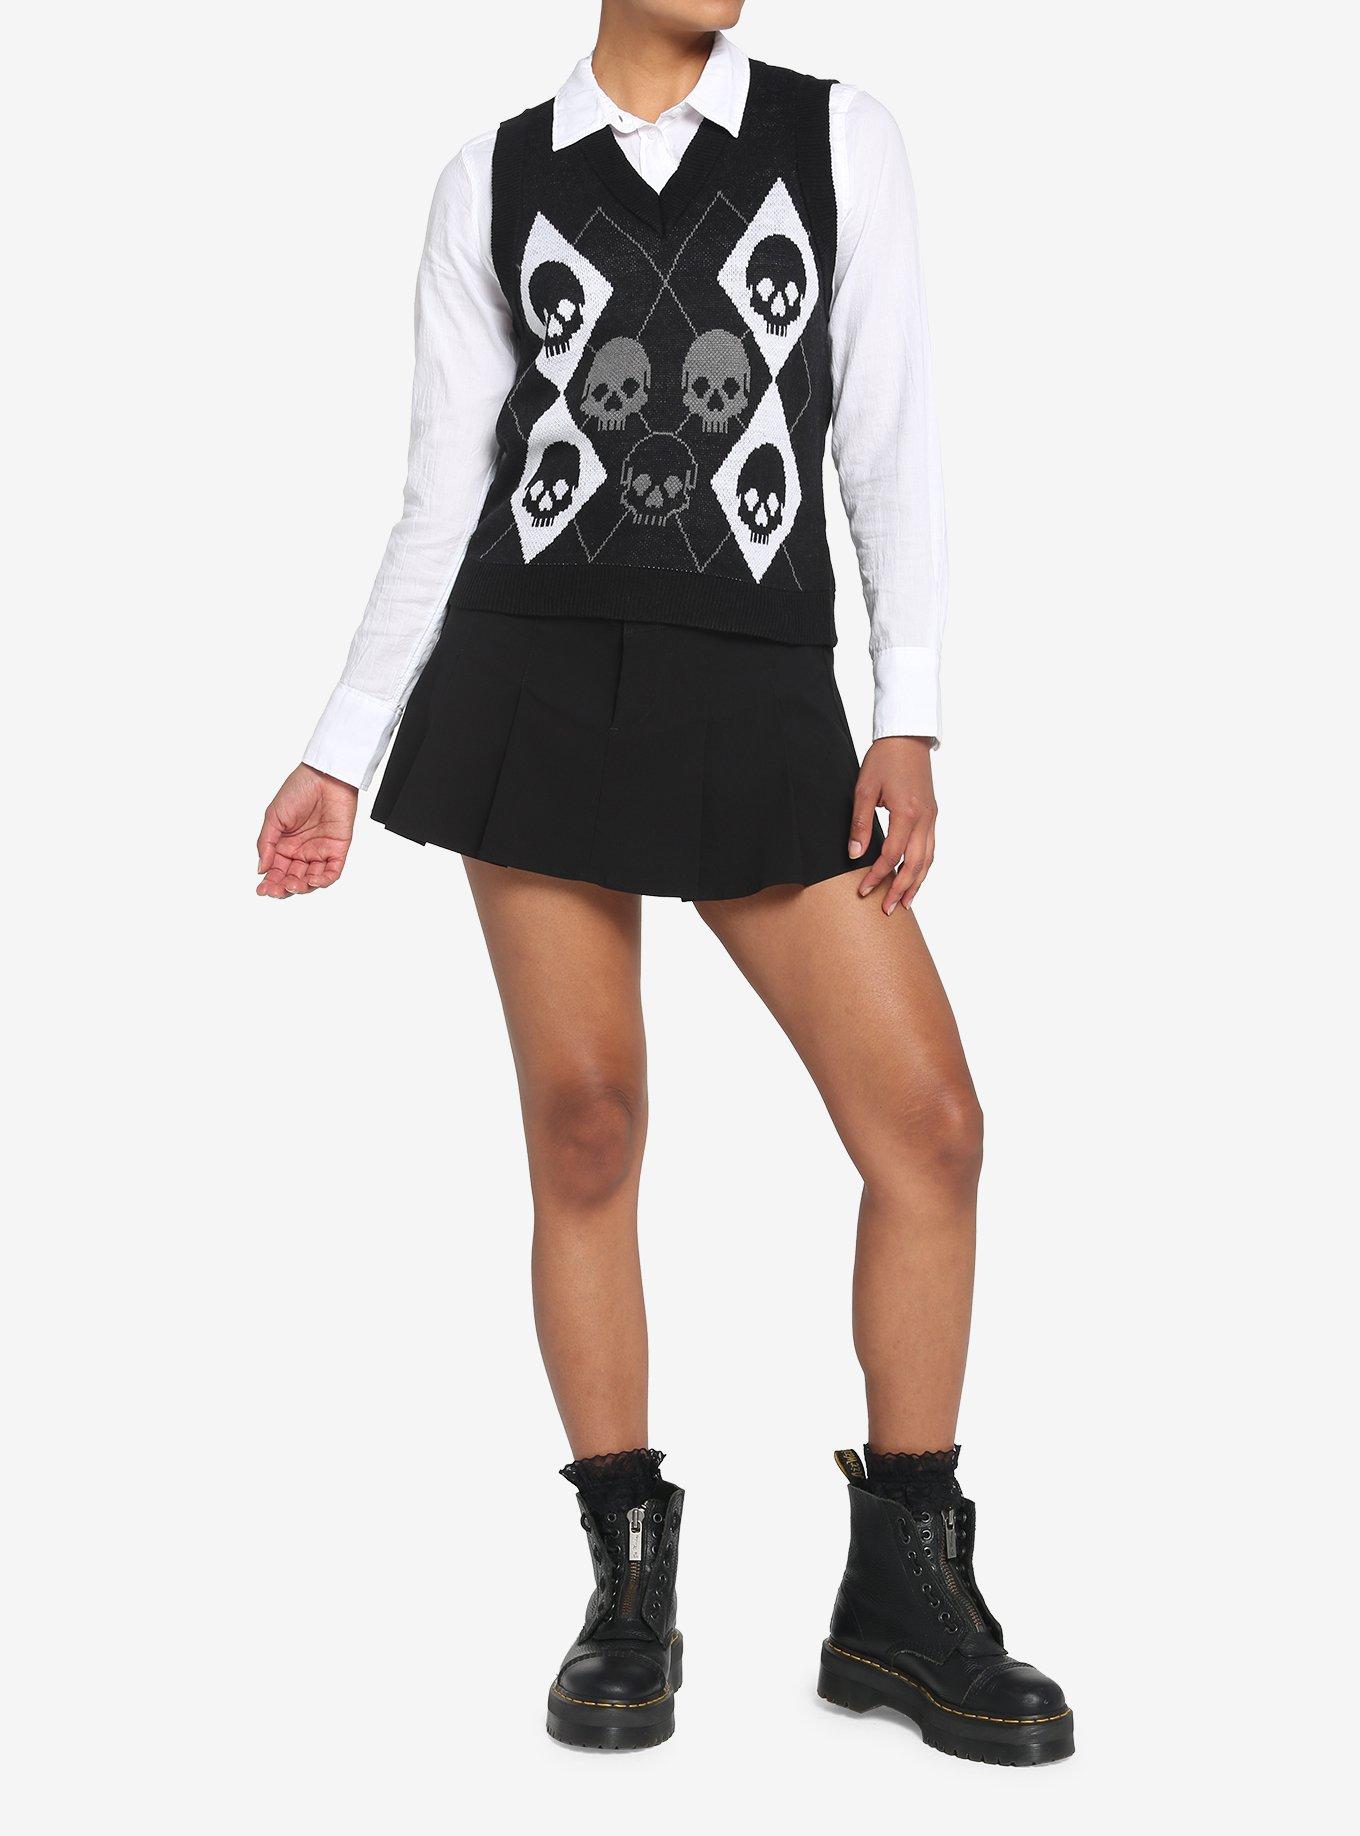 Black Skull Argyle Girls Sweater Vest, BLACK, alternate